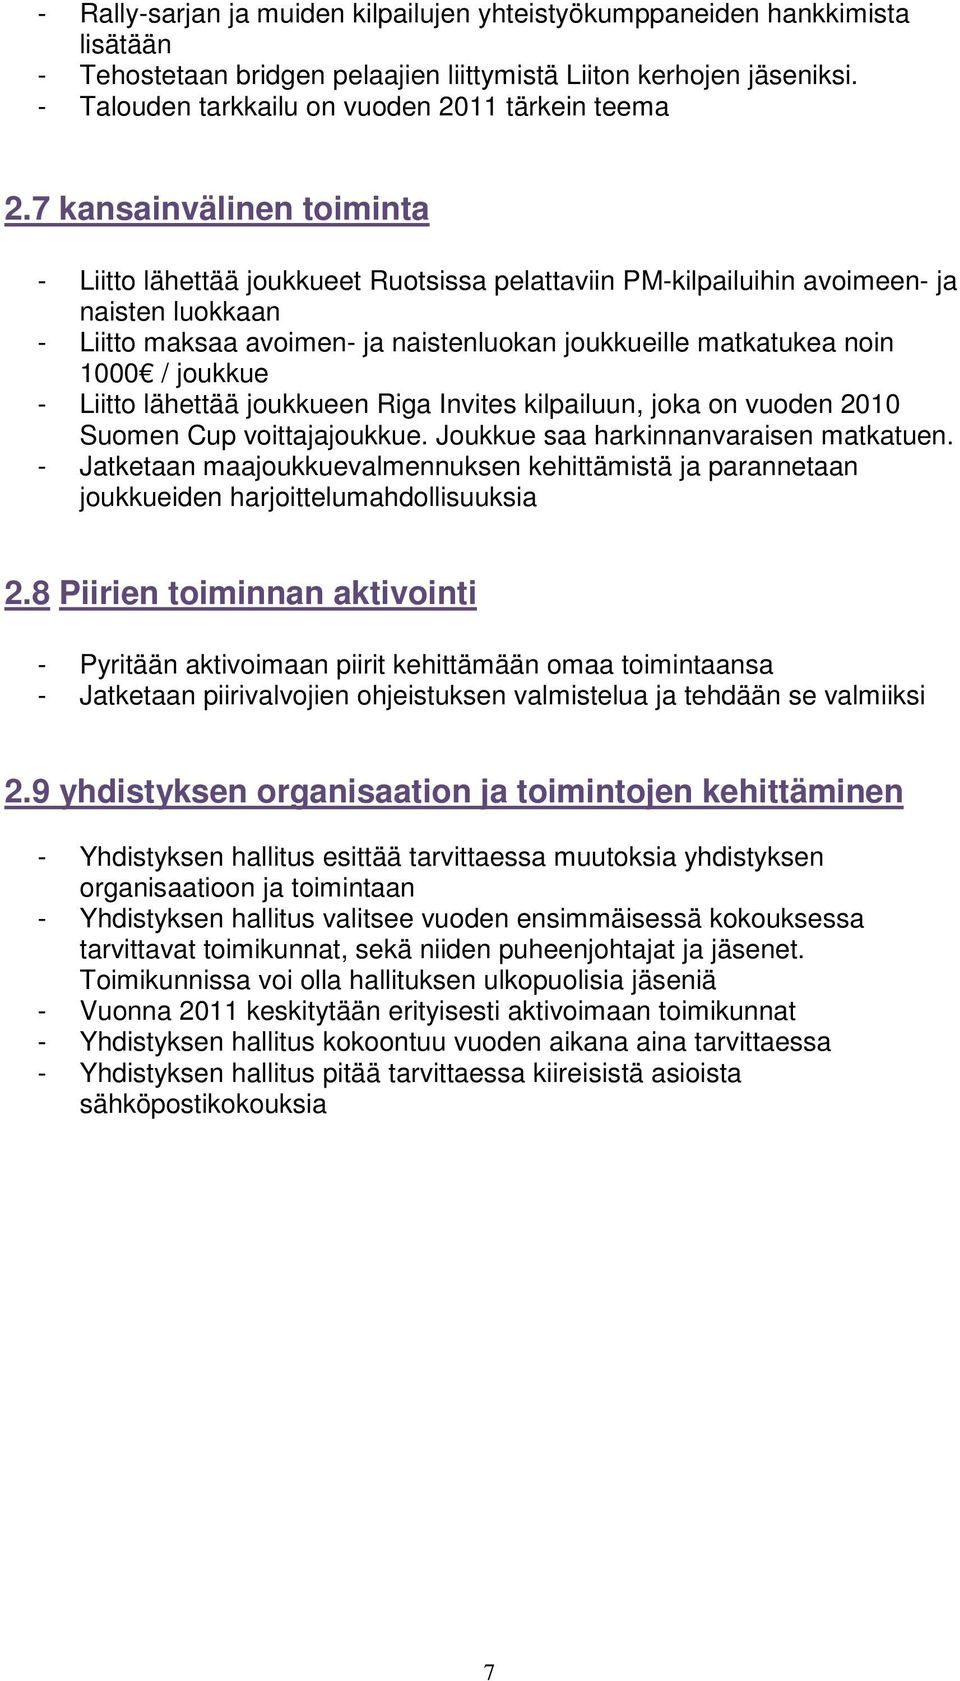 7 kansainvälinen toiminta - Liitto lähettää joukkueet Ruotsissa pelattaviin PM-kilpailuihin avoimeen- ja naisten luokkaan - Liitto maksaa avoimen- ja naistenluokan joukkueille matkatukea noin 1000 /